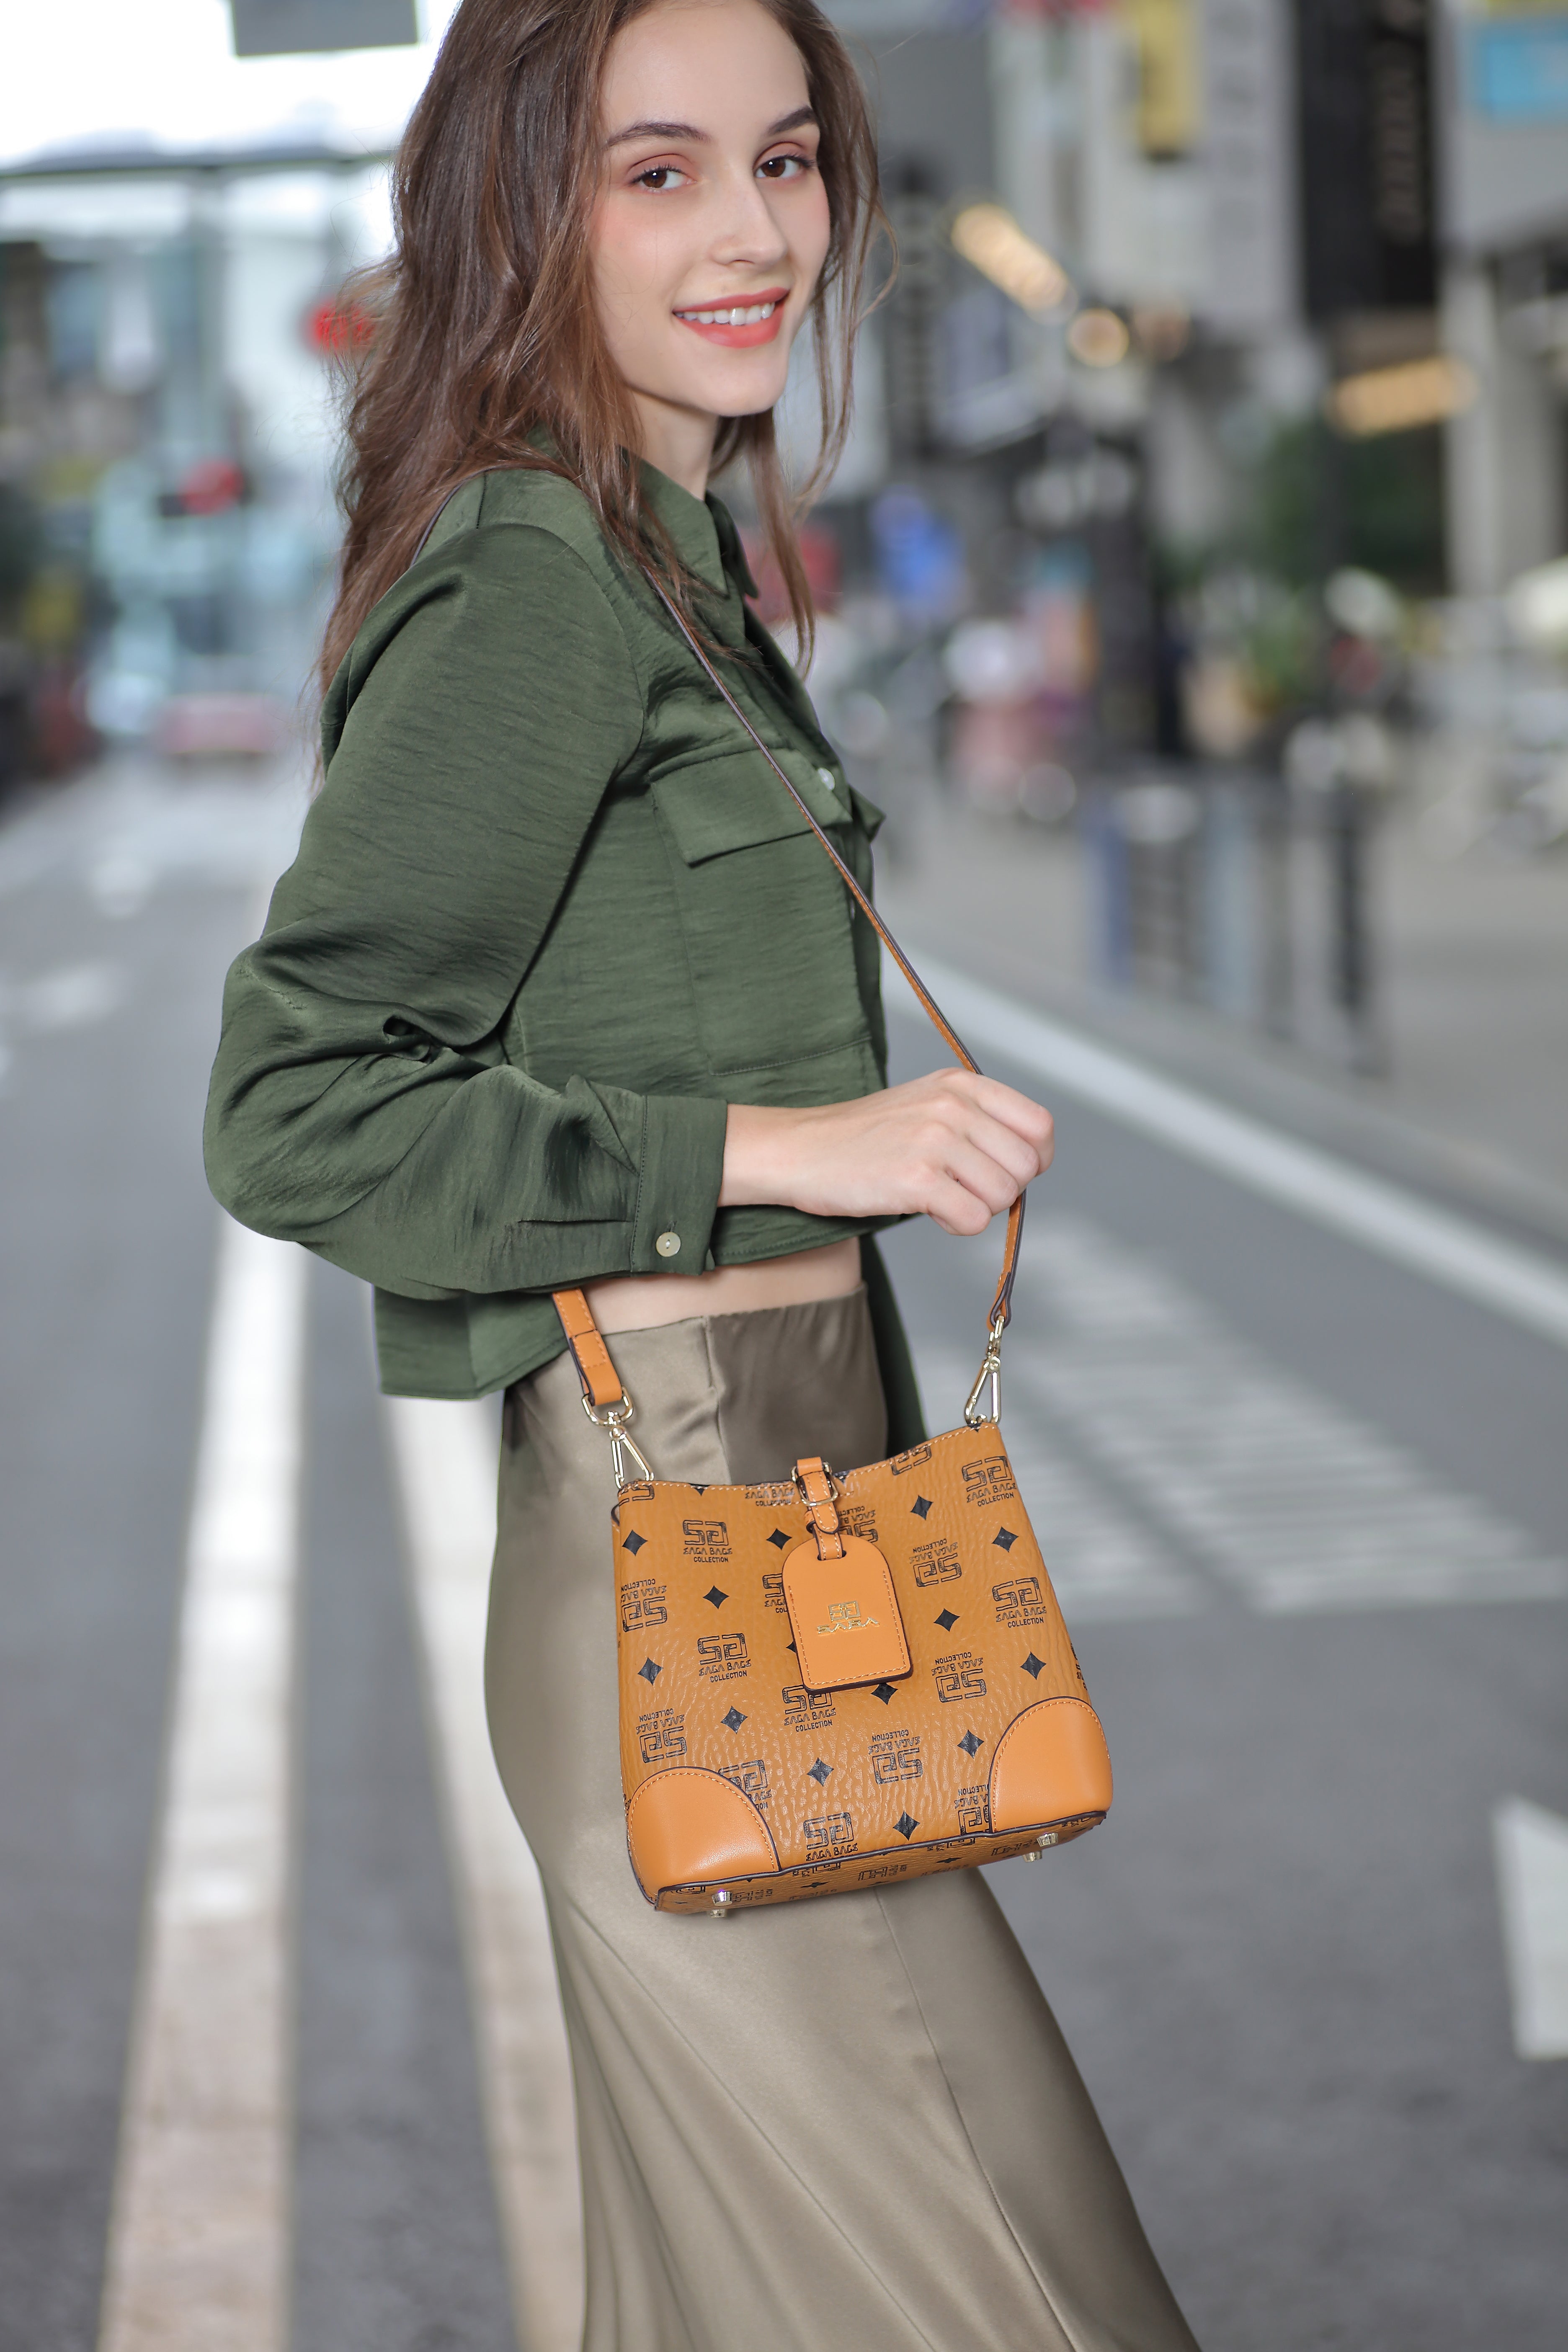 شابة تبتسم وهي تحمل حقيبة يد صغيرة بنية اللون من ماركة ساغا، وترتدي بلوزة خضراء وبنطال بيج في شارع المدينة